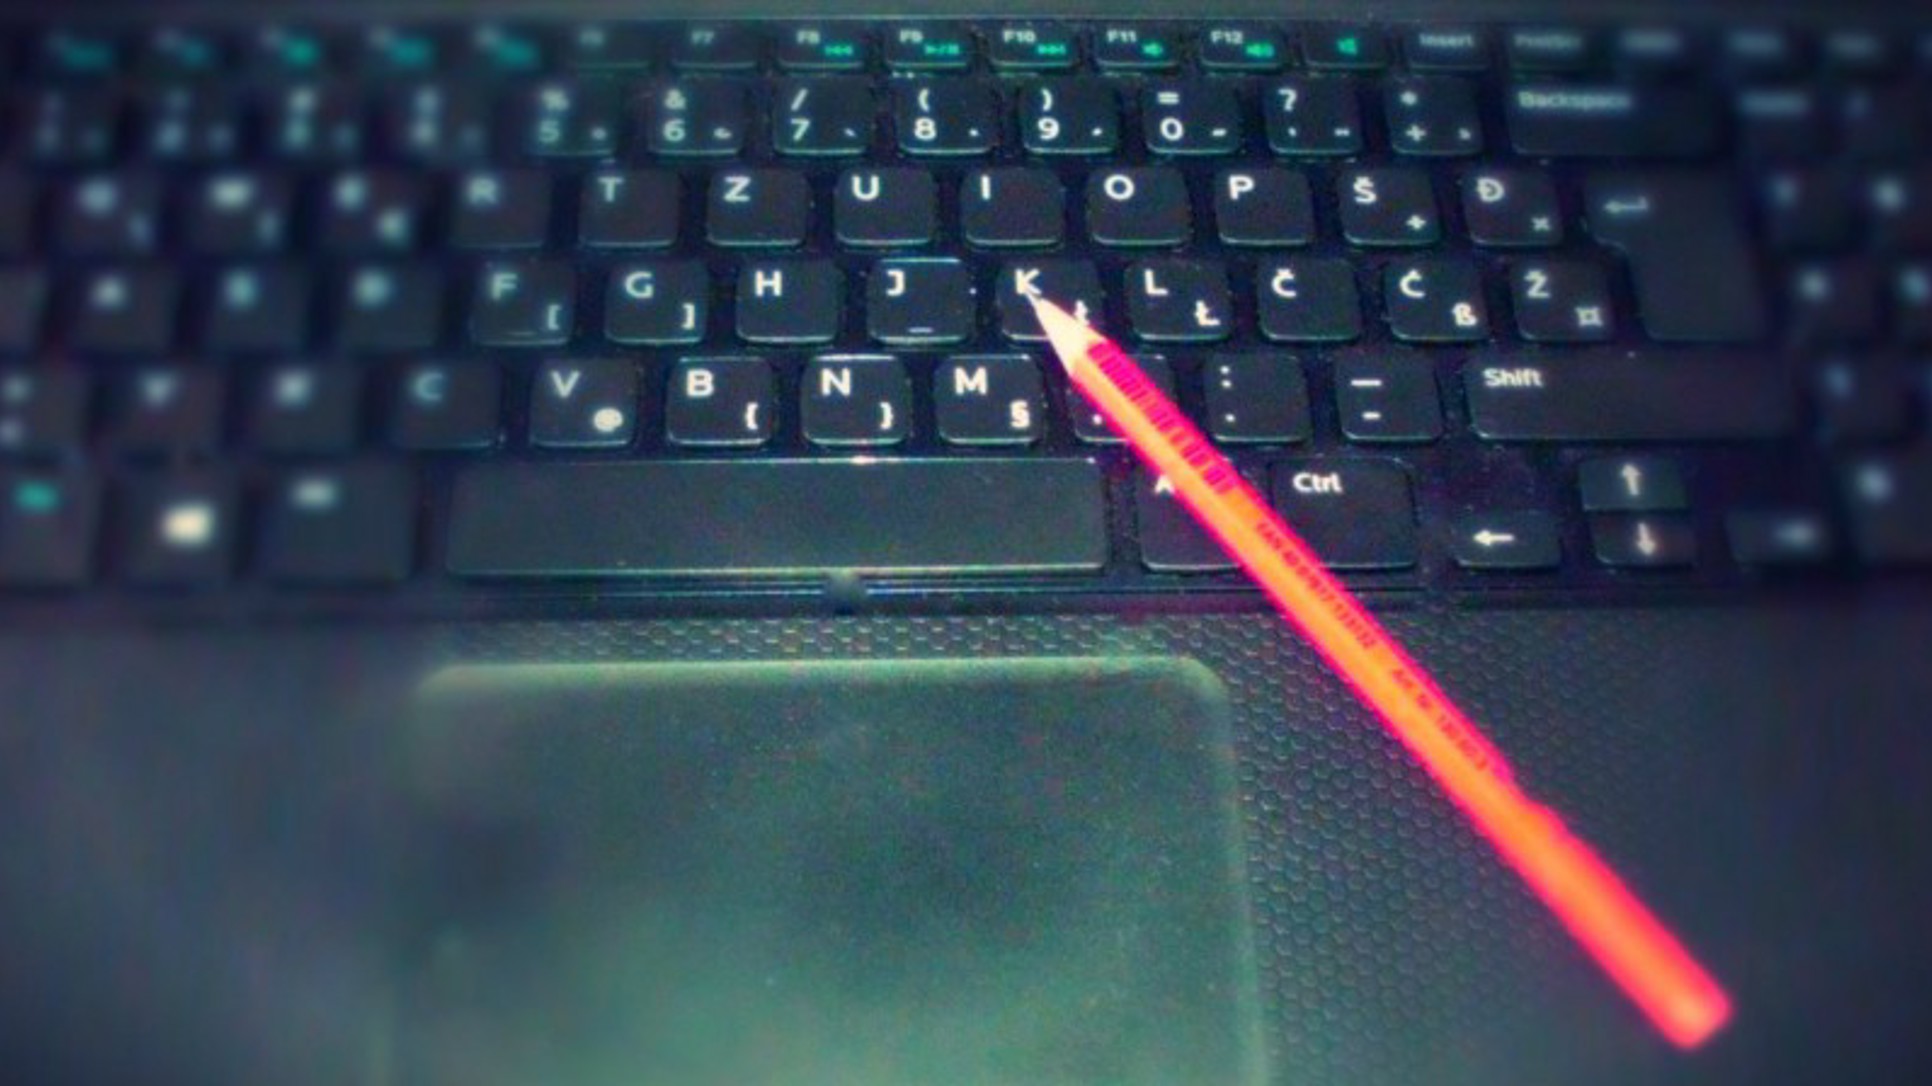 Tastatura ili olovka?